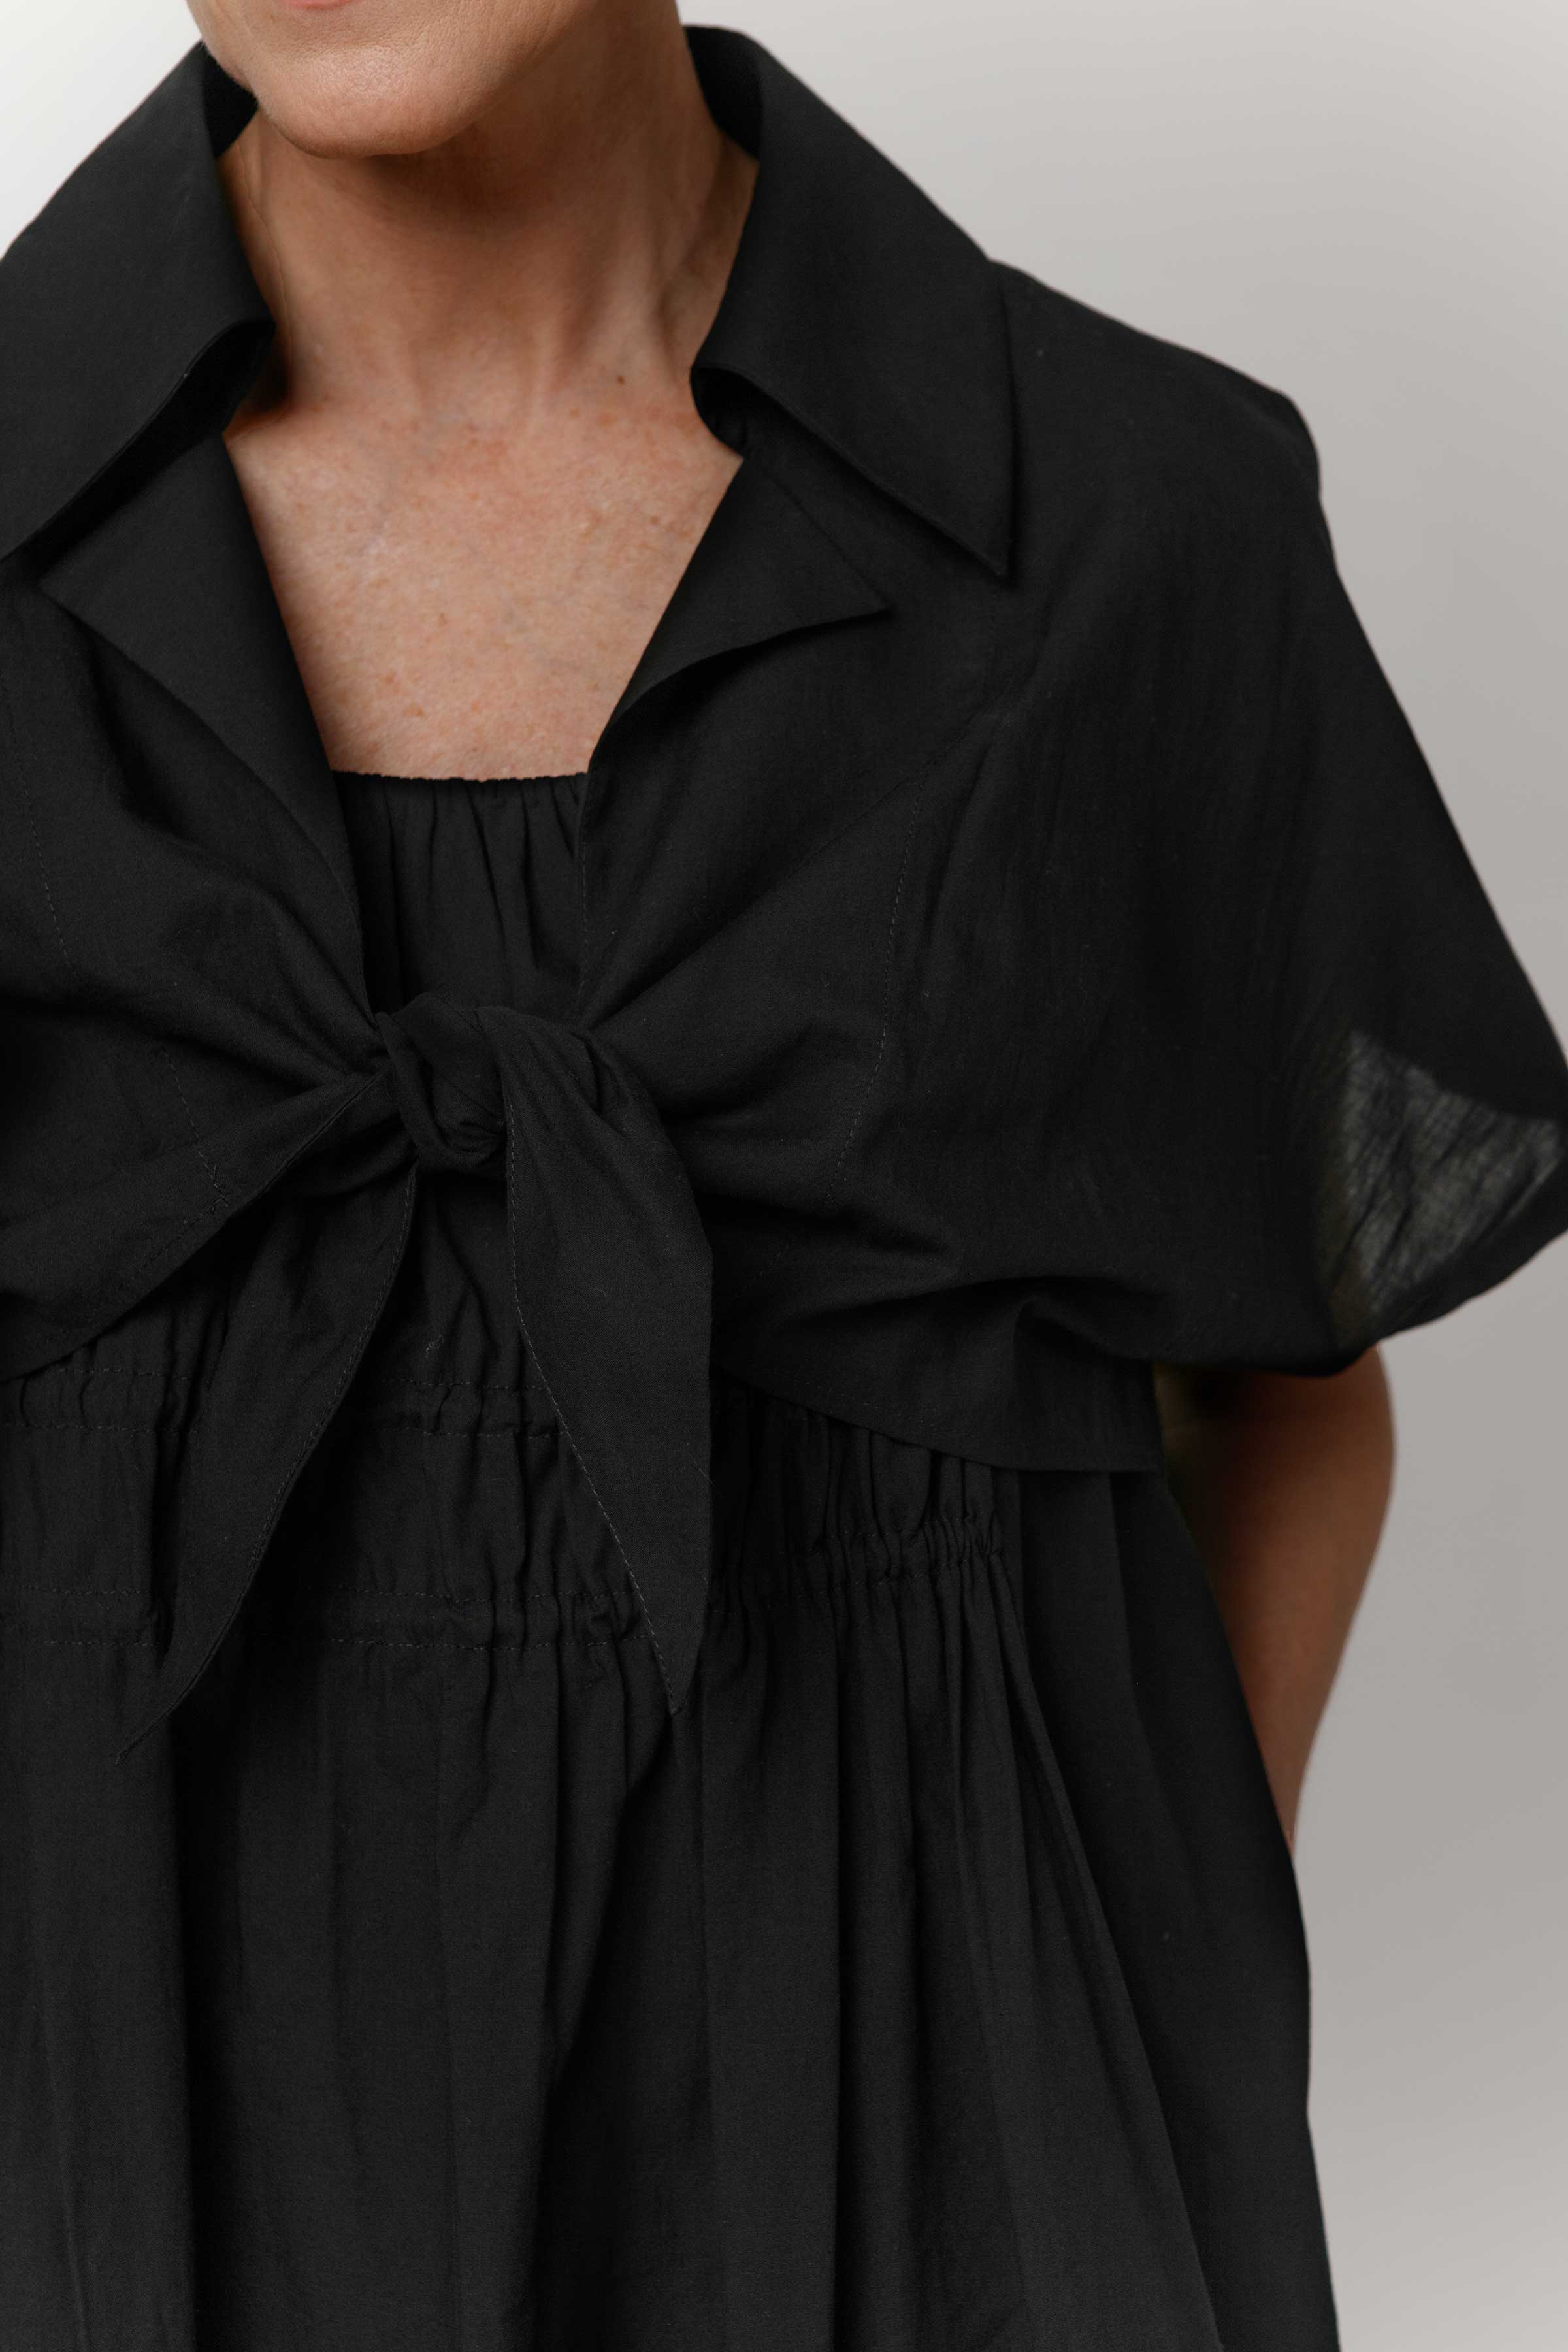 Блуза-накидка тонкий хлопок 00 Черный (noir) от Lesel (Лесель)! Заказывайте по ✆ 8 (800) 777 02 37